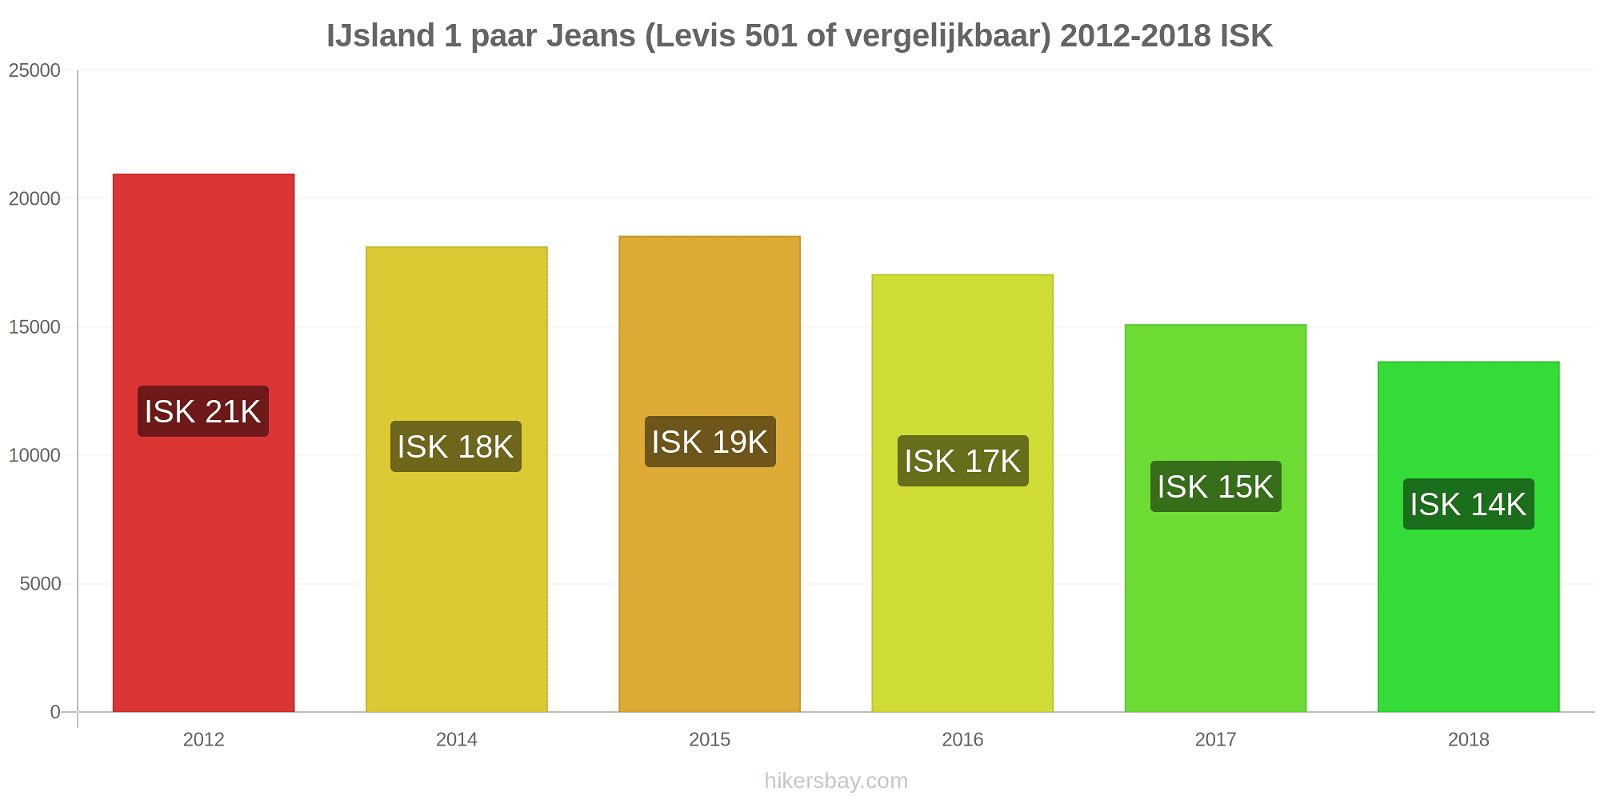 IJsland prijswijzigingen 1 paar jeans (Levis 501 of vergelijkbaar) hikersbay.com